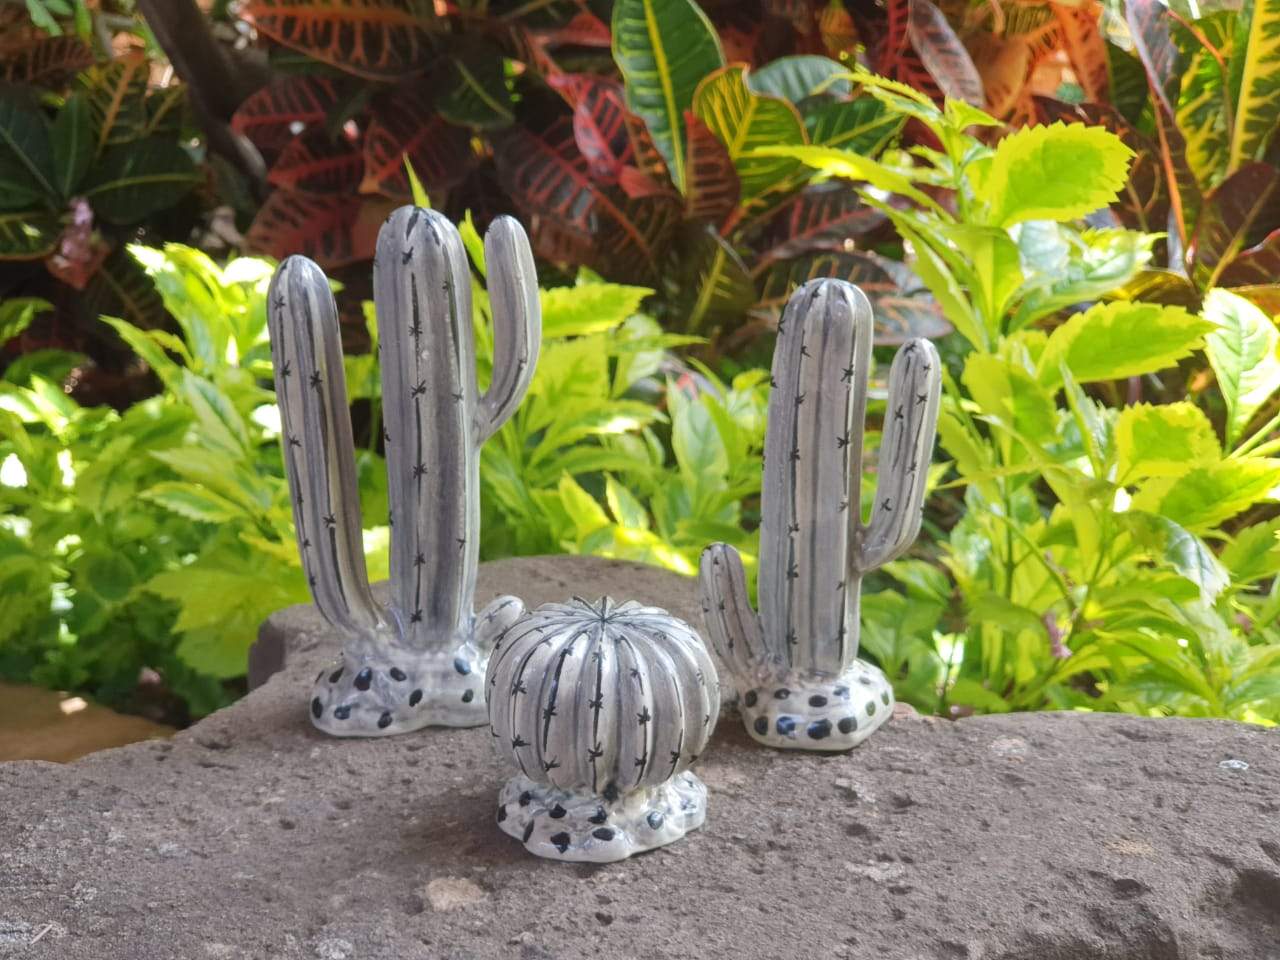 Cactus Figures Sets Of 3 Pieces Choose Your Favorite Color